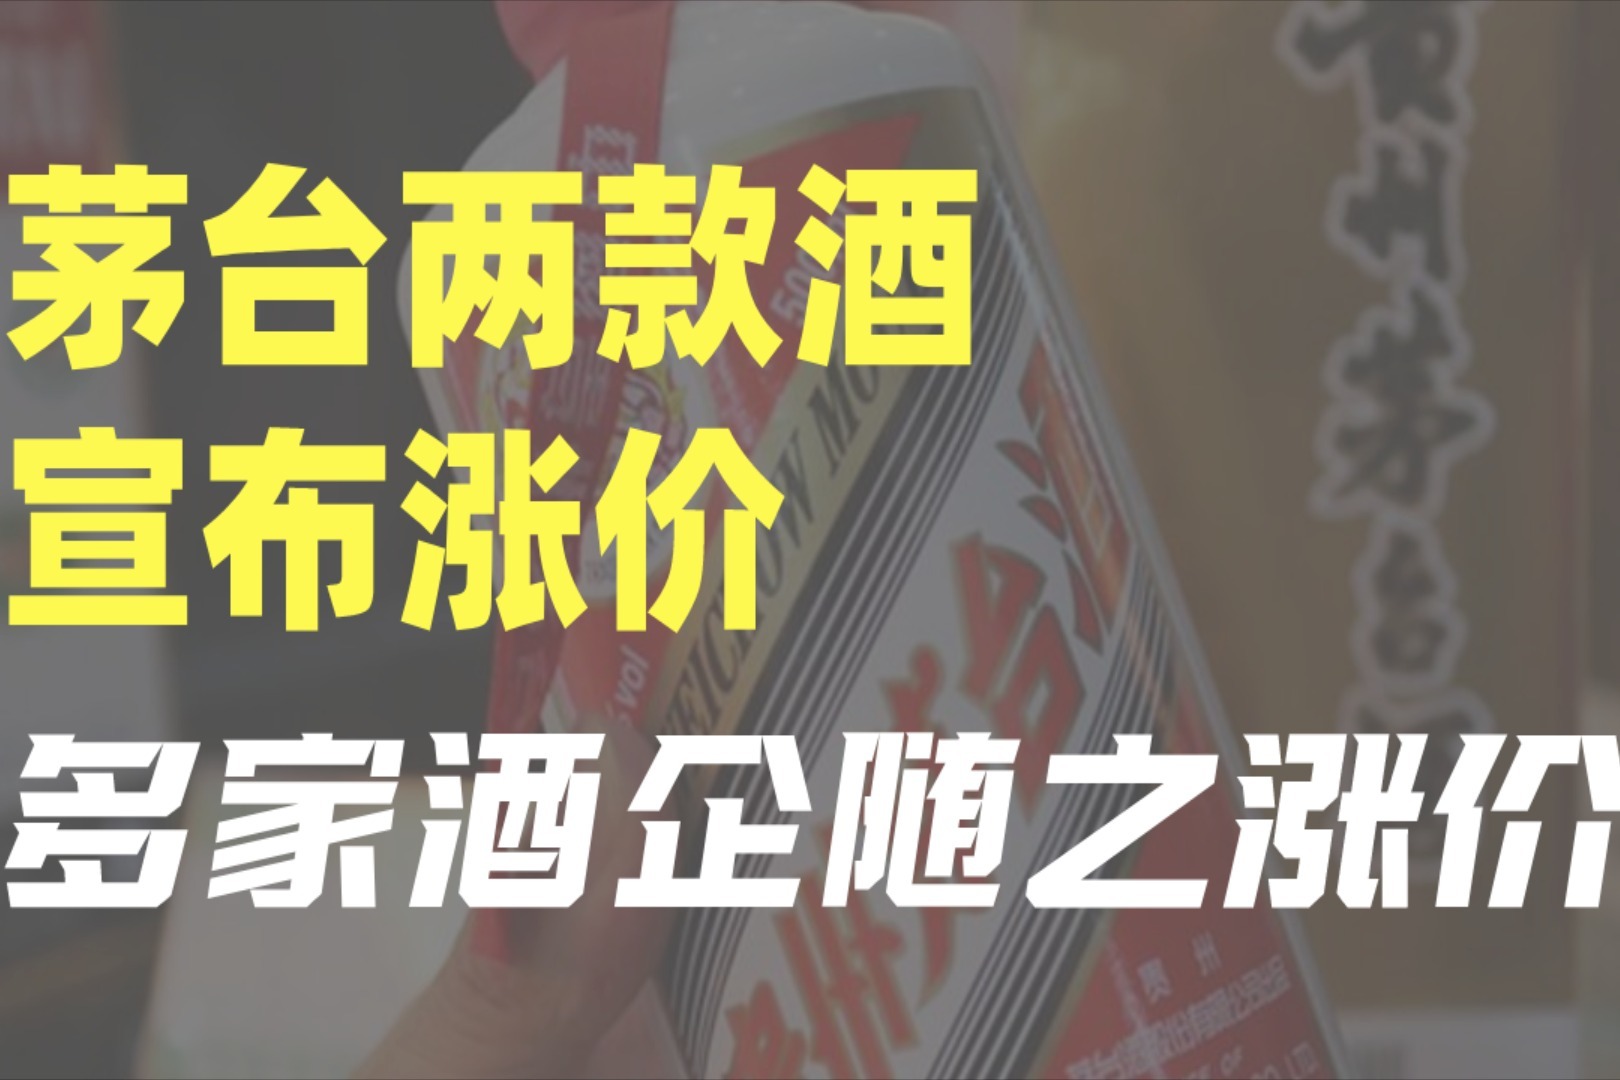 特斯拉涨价之际 领克宣布旗下新能源产品指导价全面下调_搜狐汽车_搜狐网